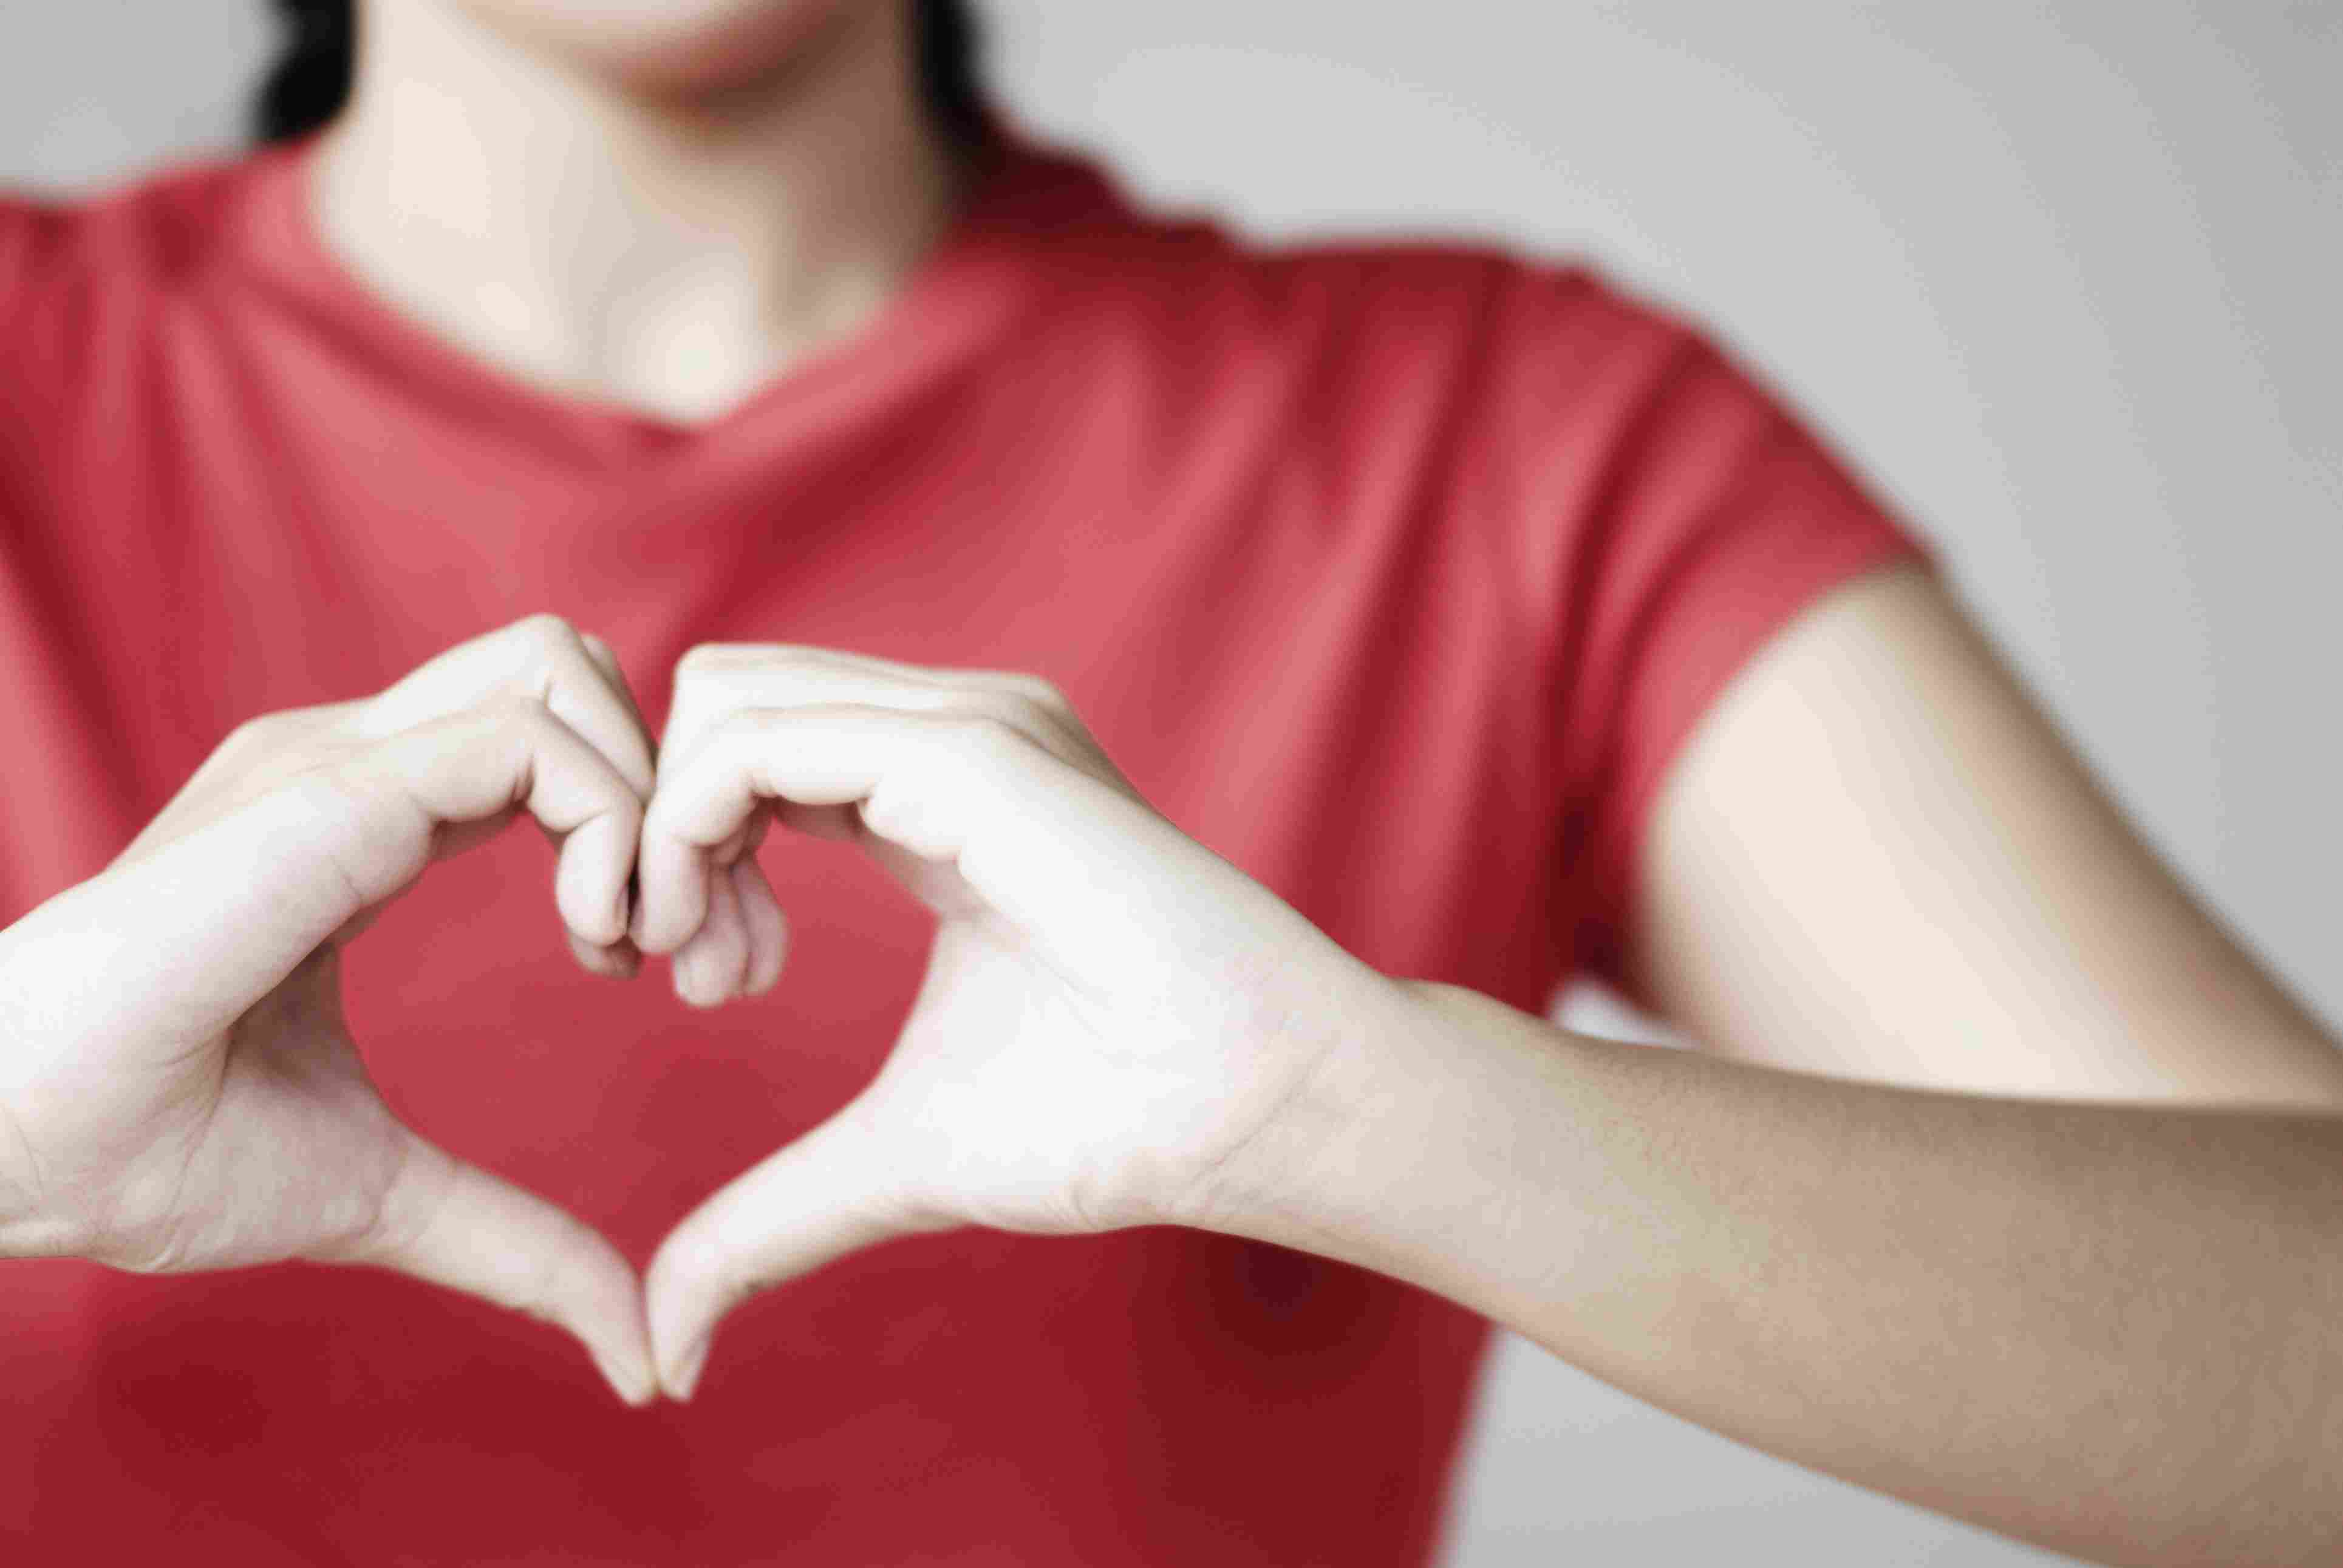 النساء اكثر عرضة للإصابة بالنوبة القلبية 